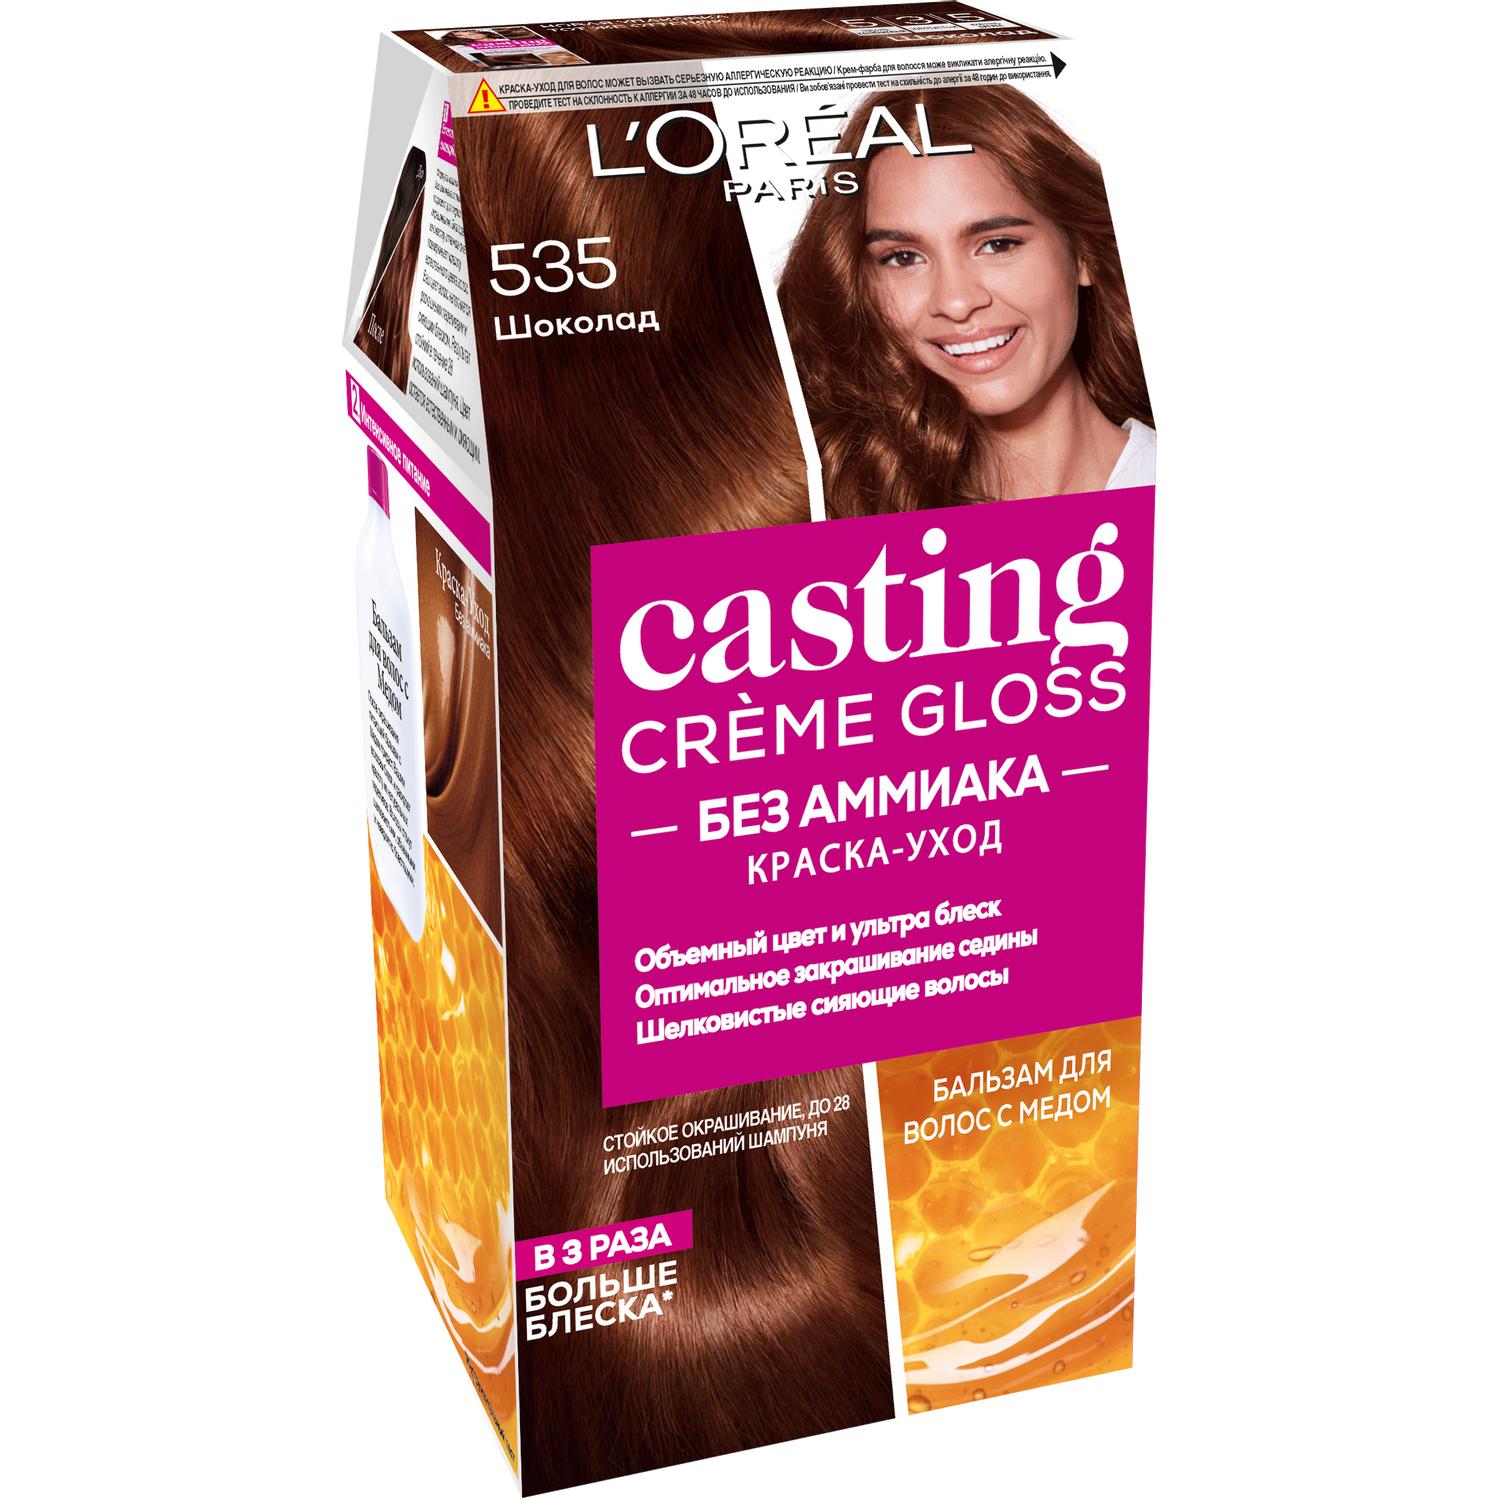 Краска L’Oreal Casting Creme Gloss 535 254 мл Шоколад (A3285100) краска для волос l oreal paris casting creme gloss 635 шоколадное пралине